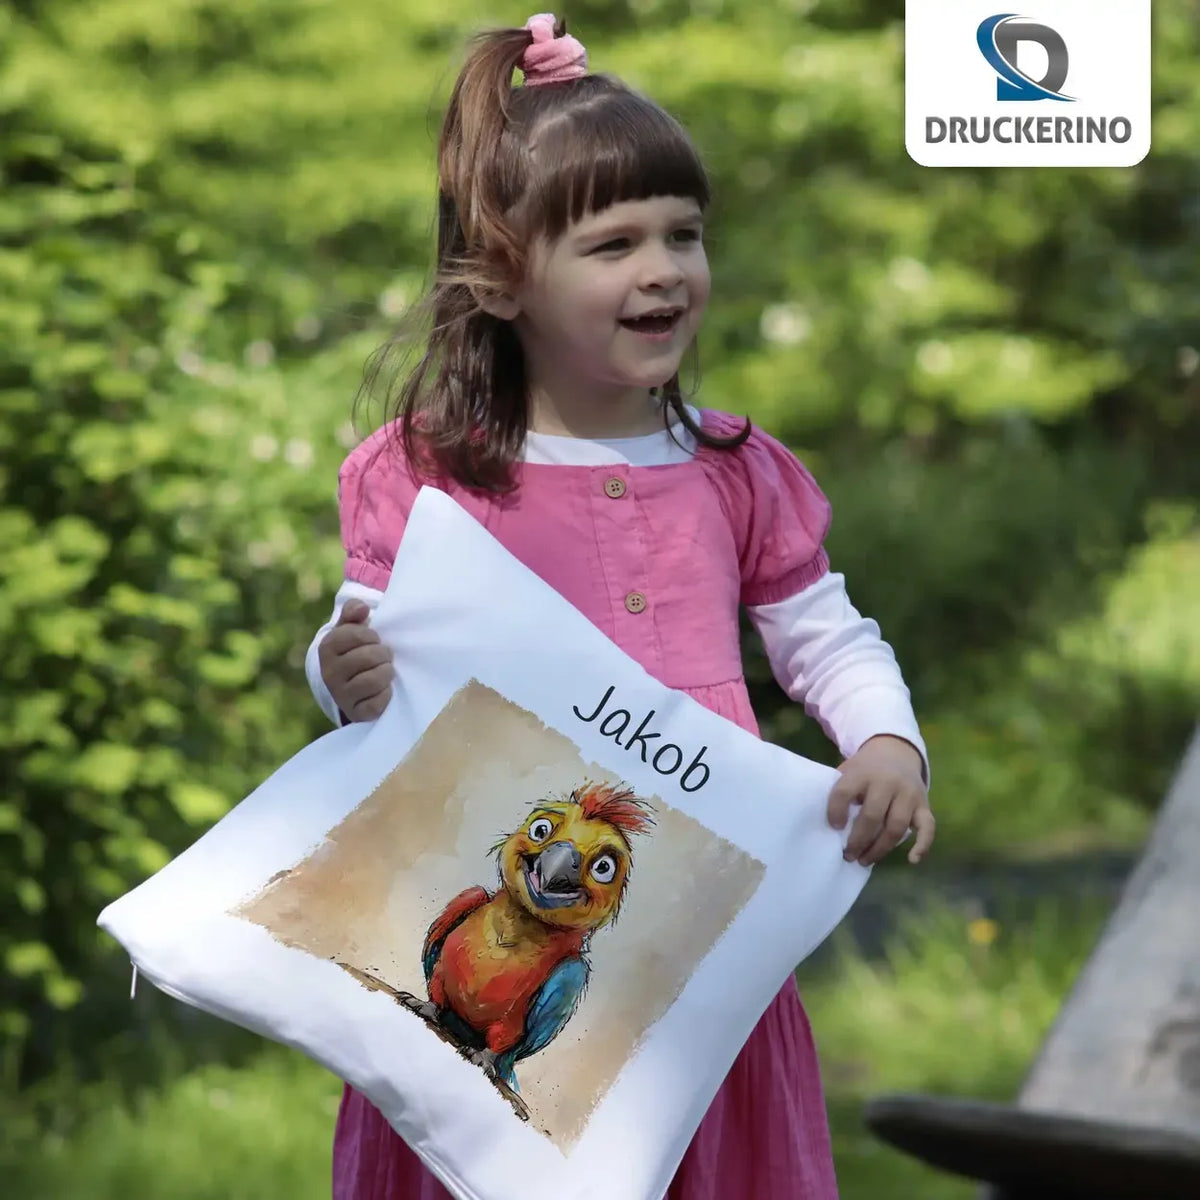 Traumparadies Papagei Kissen für Kinder mit Namen personalisiert Kissen Druckerino   